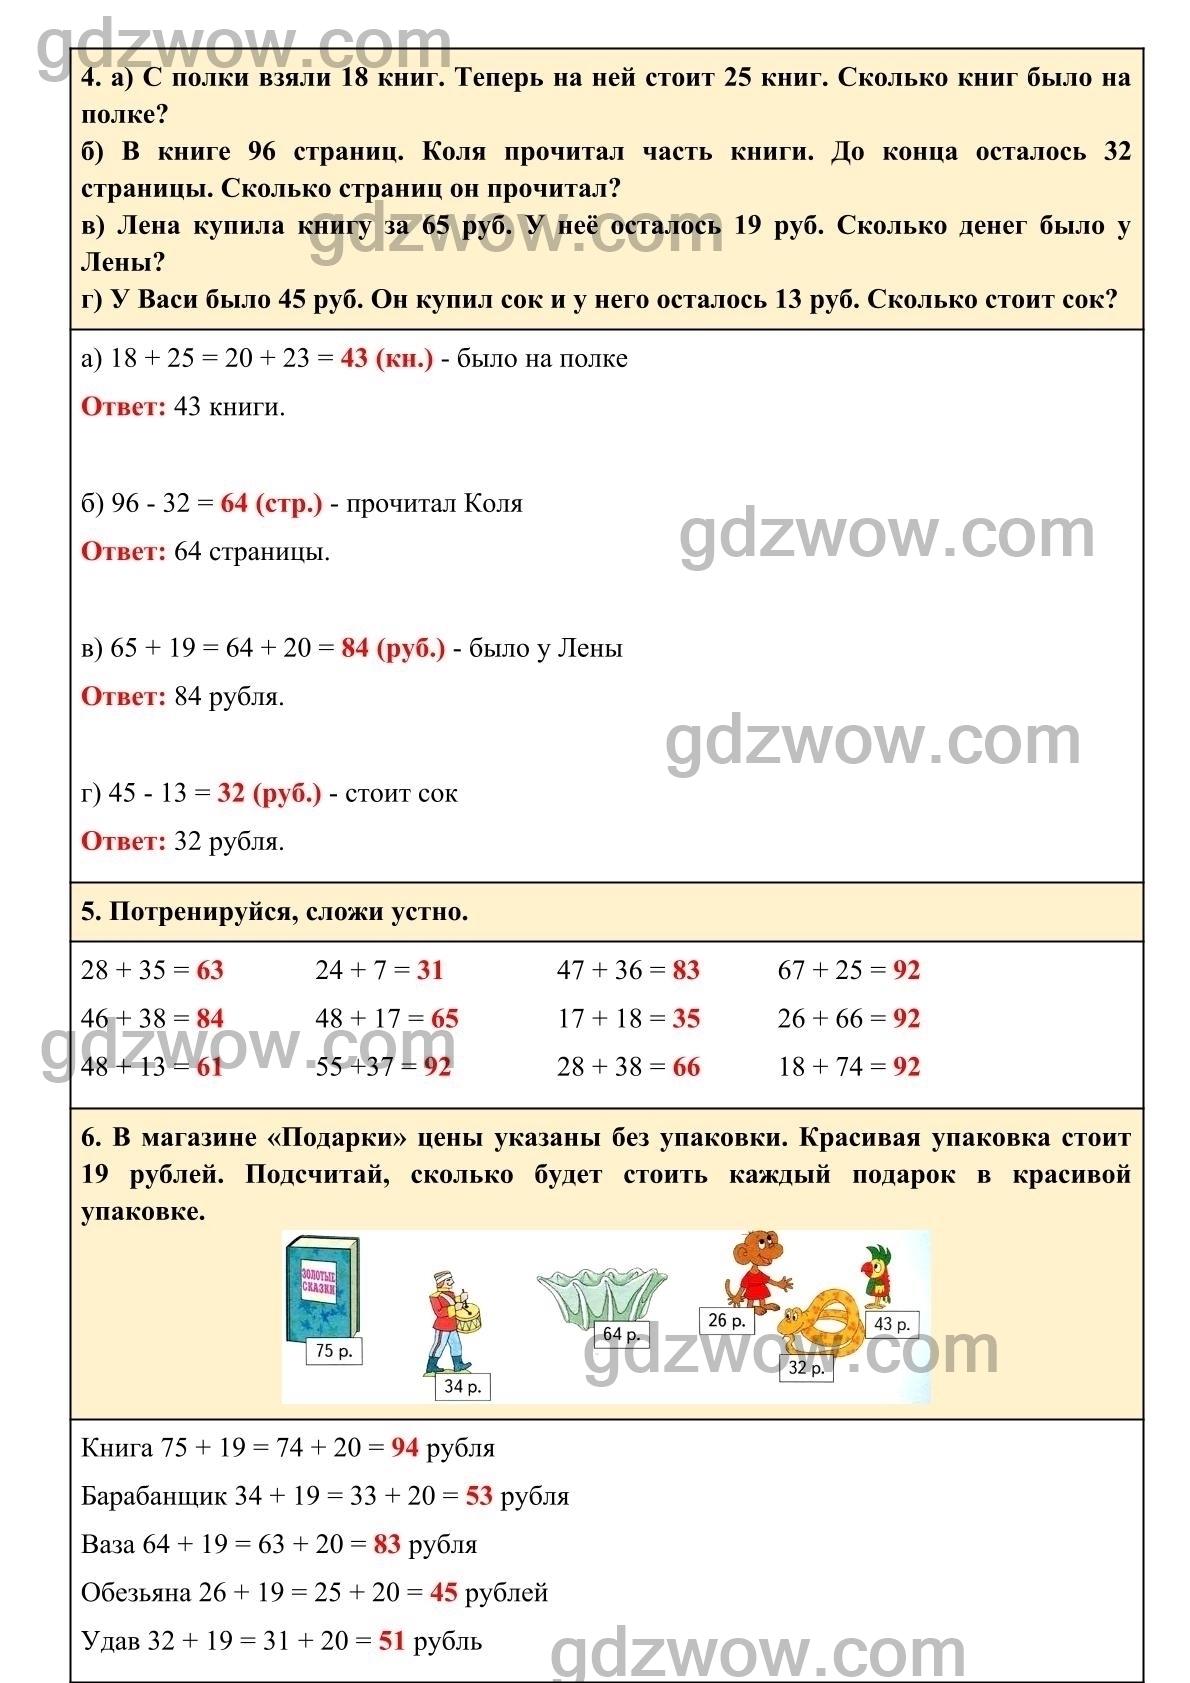 Математика 2 класс учебник башмакова решебник